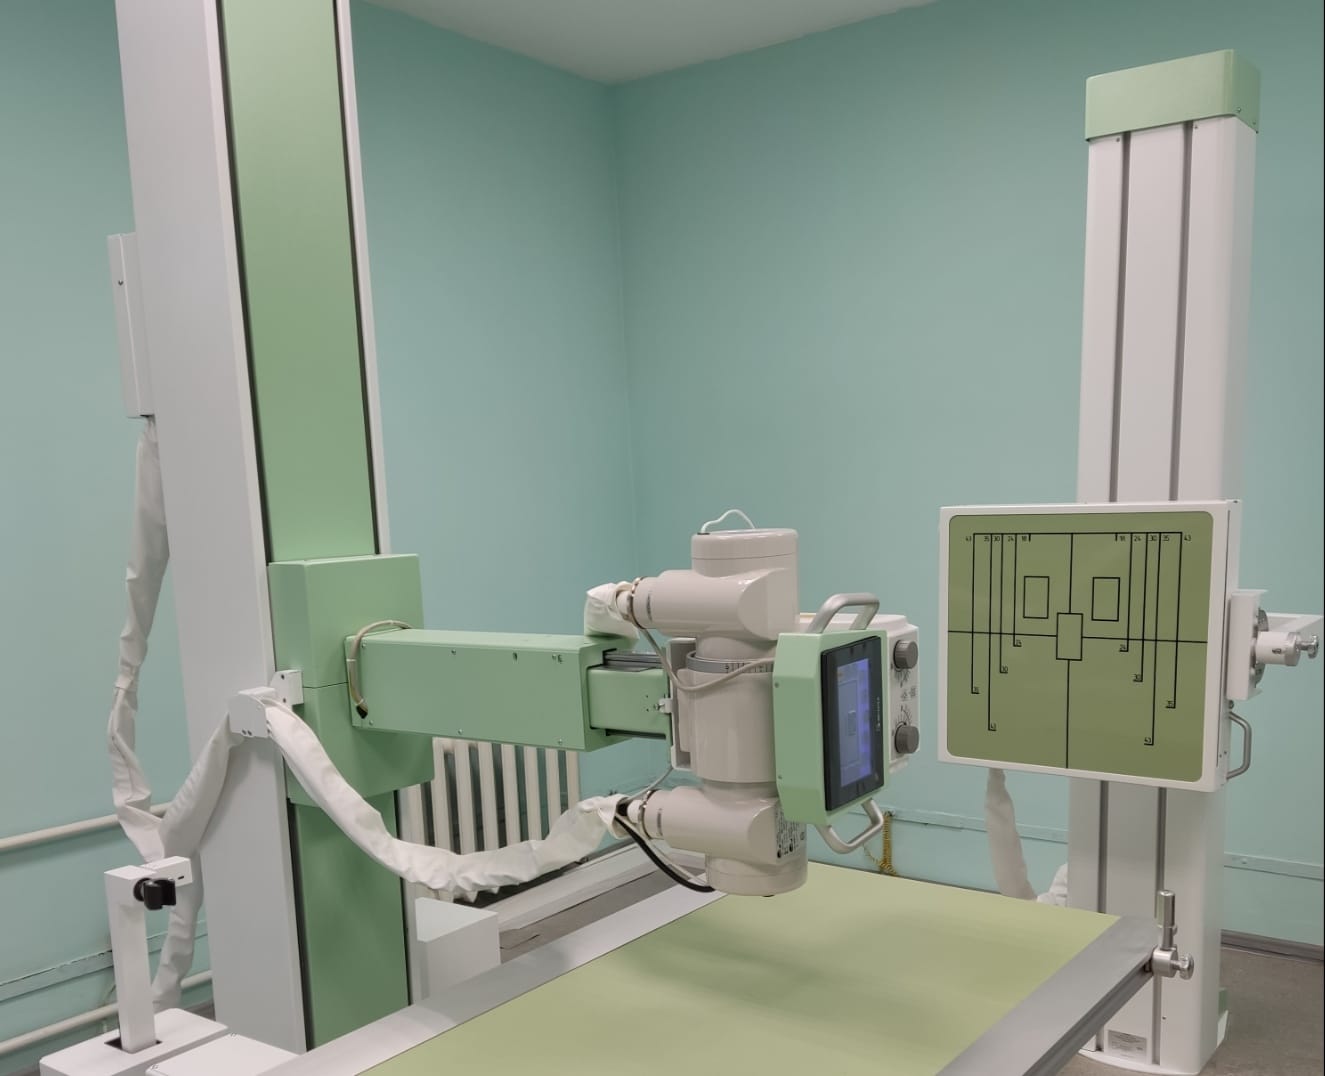 Более пятидесяти тысяч исследований выполнено за три года на новом рентген-аппарате в Зеленоградске